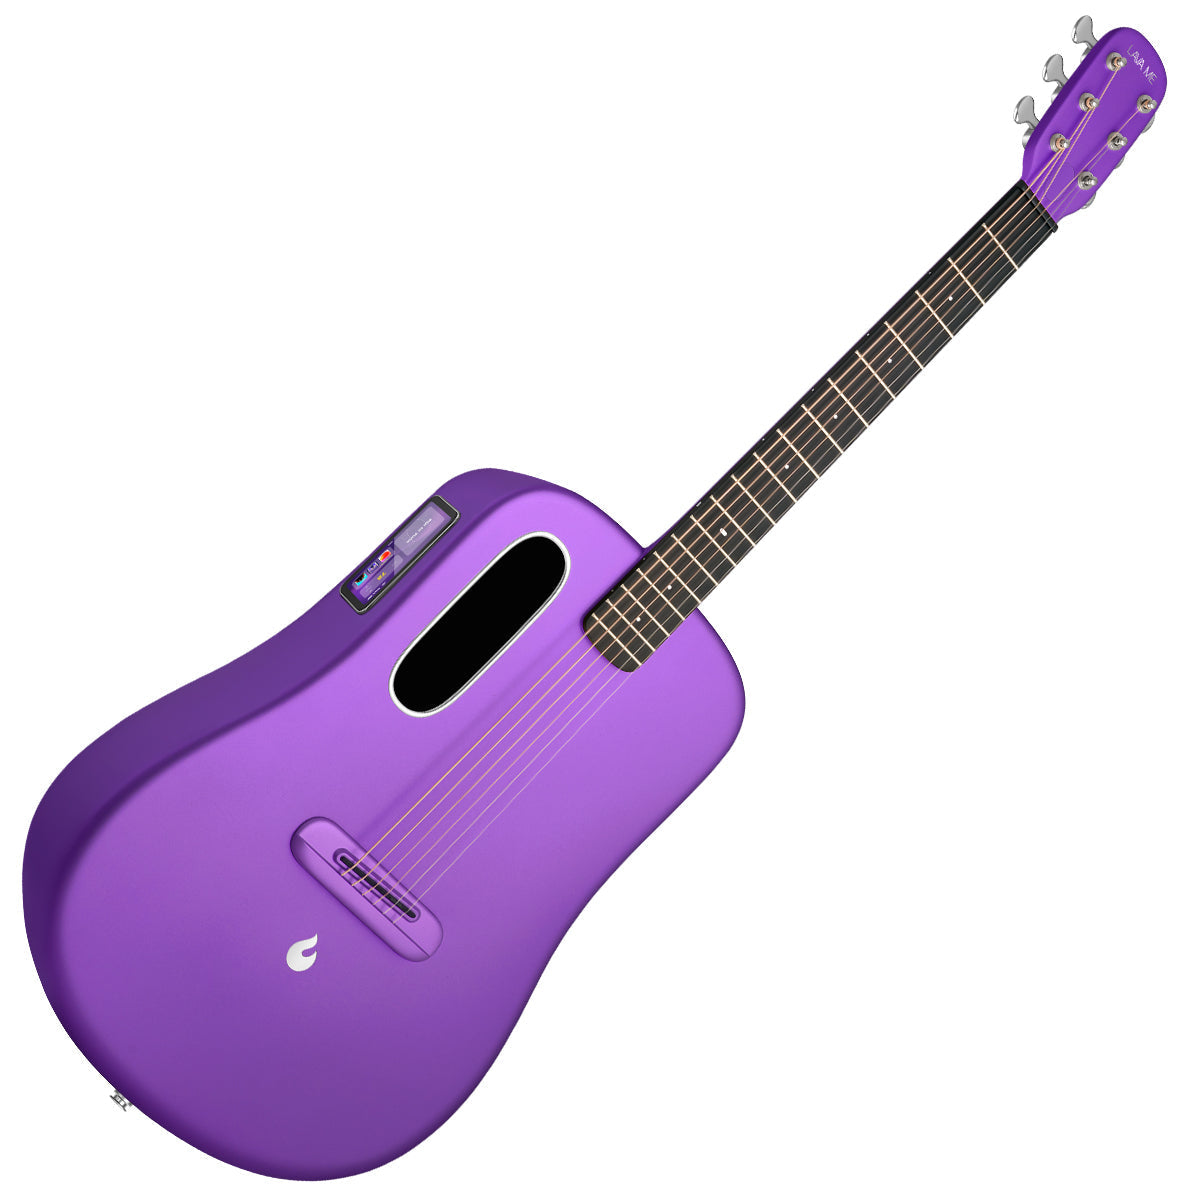 LAVA ME4 Carbon 36" with AirFlow Bag ~ Purple, Acoustic Guitar for sale at Richards Guitars.